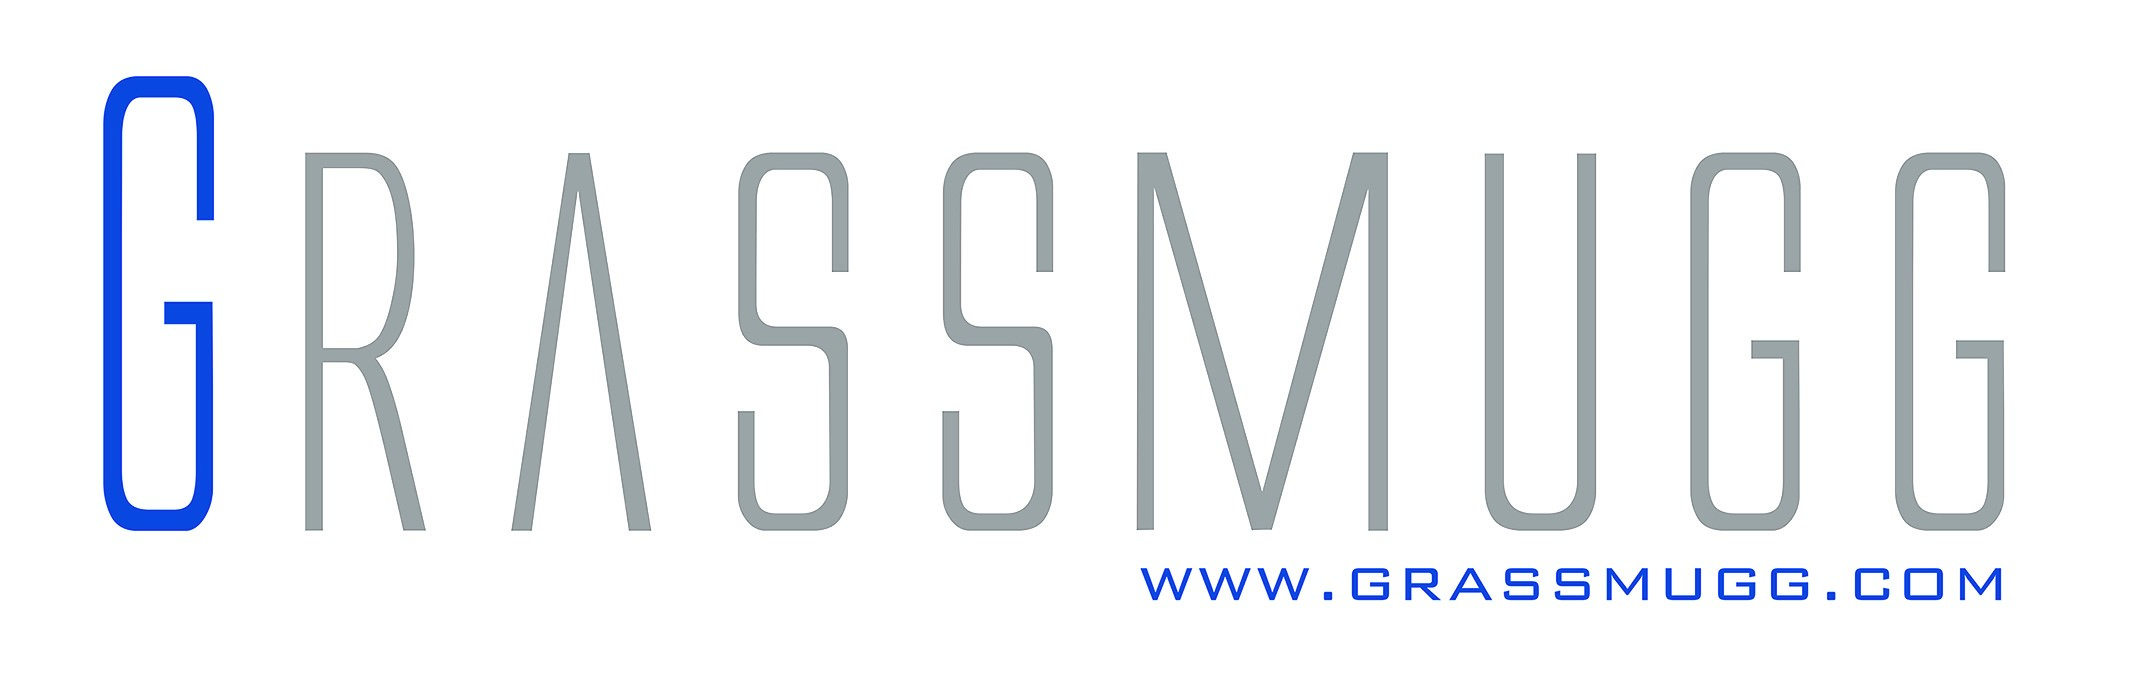 grassmugg-logo